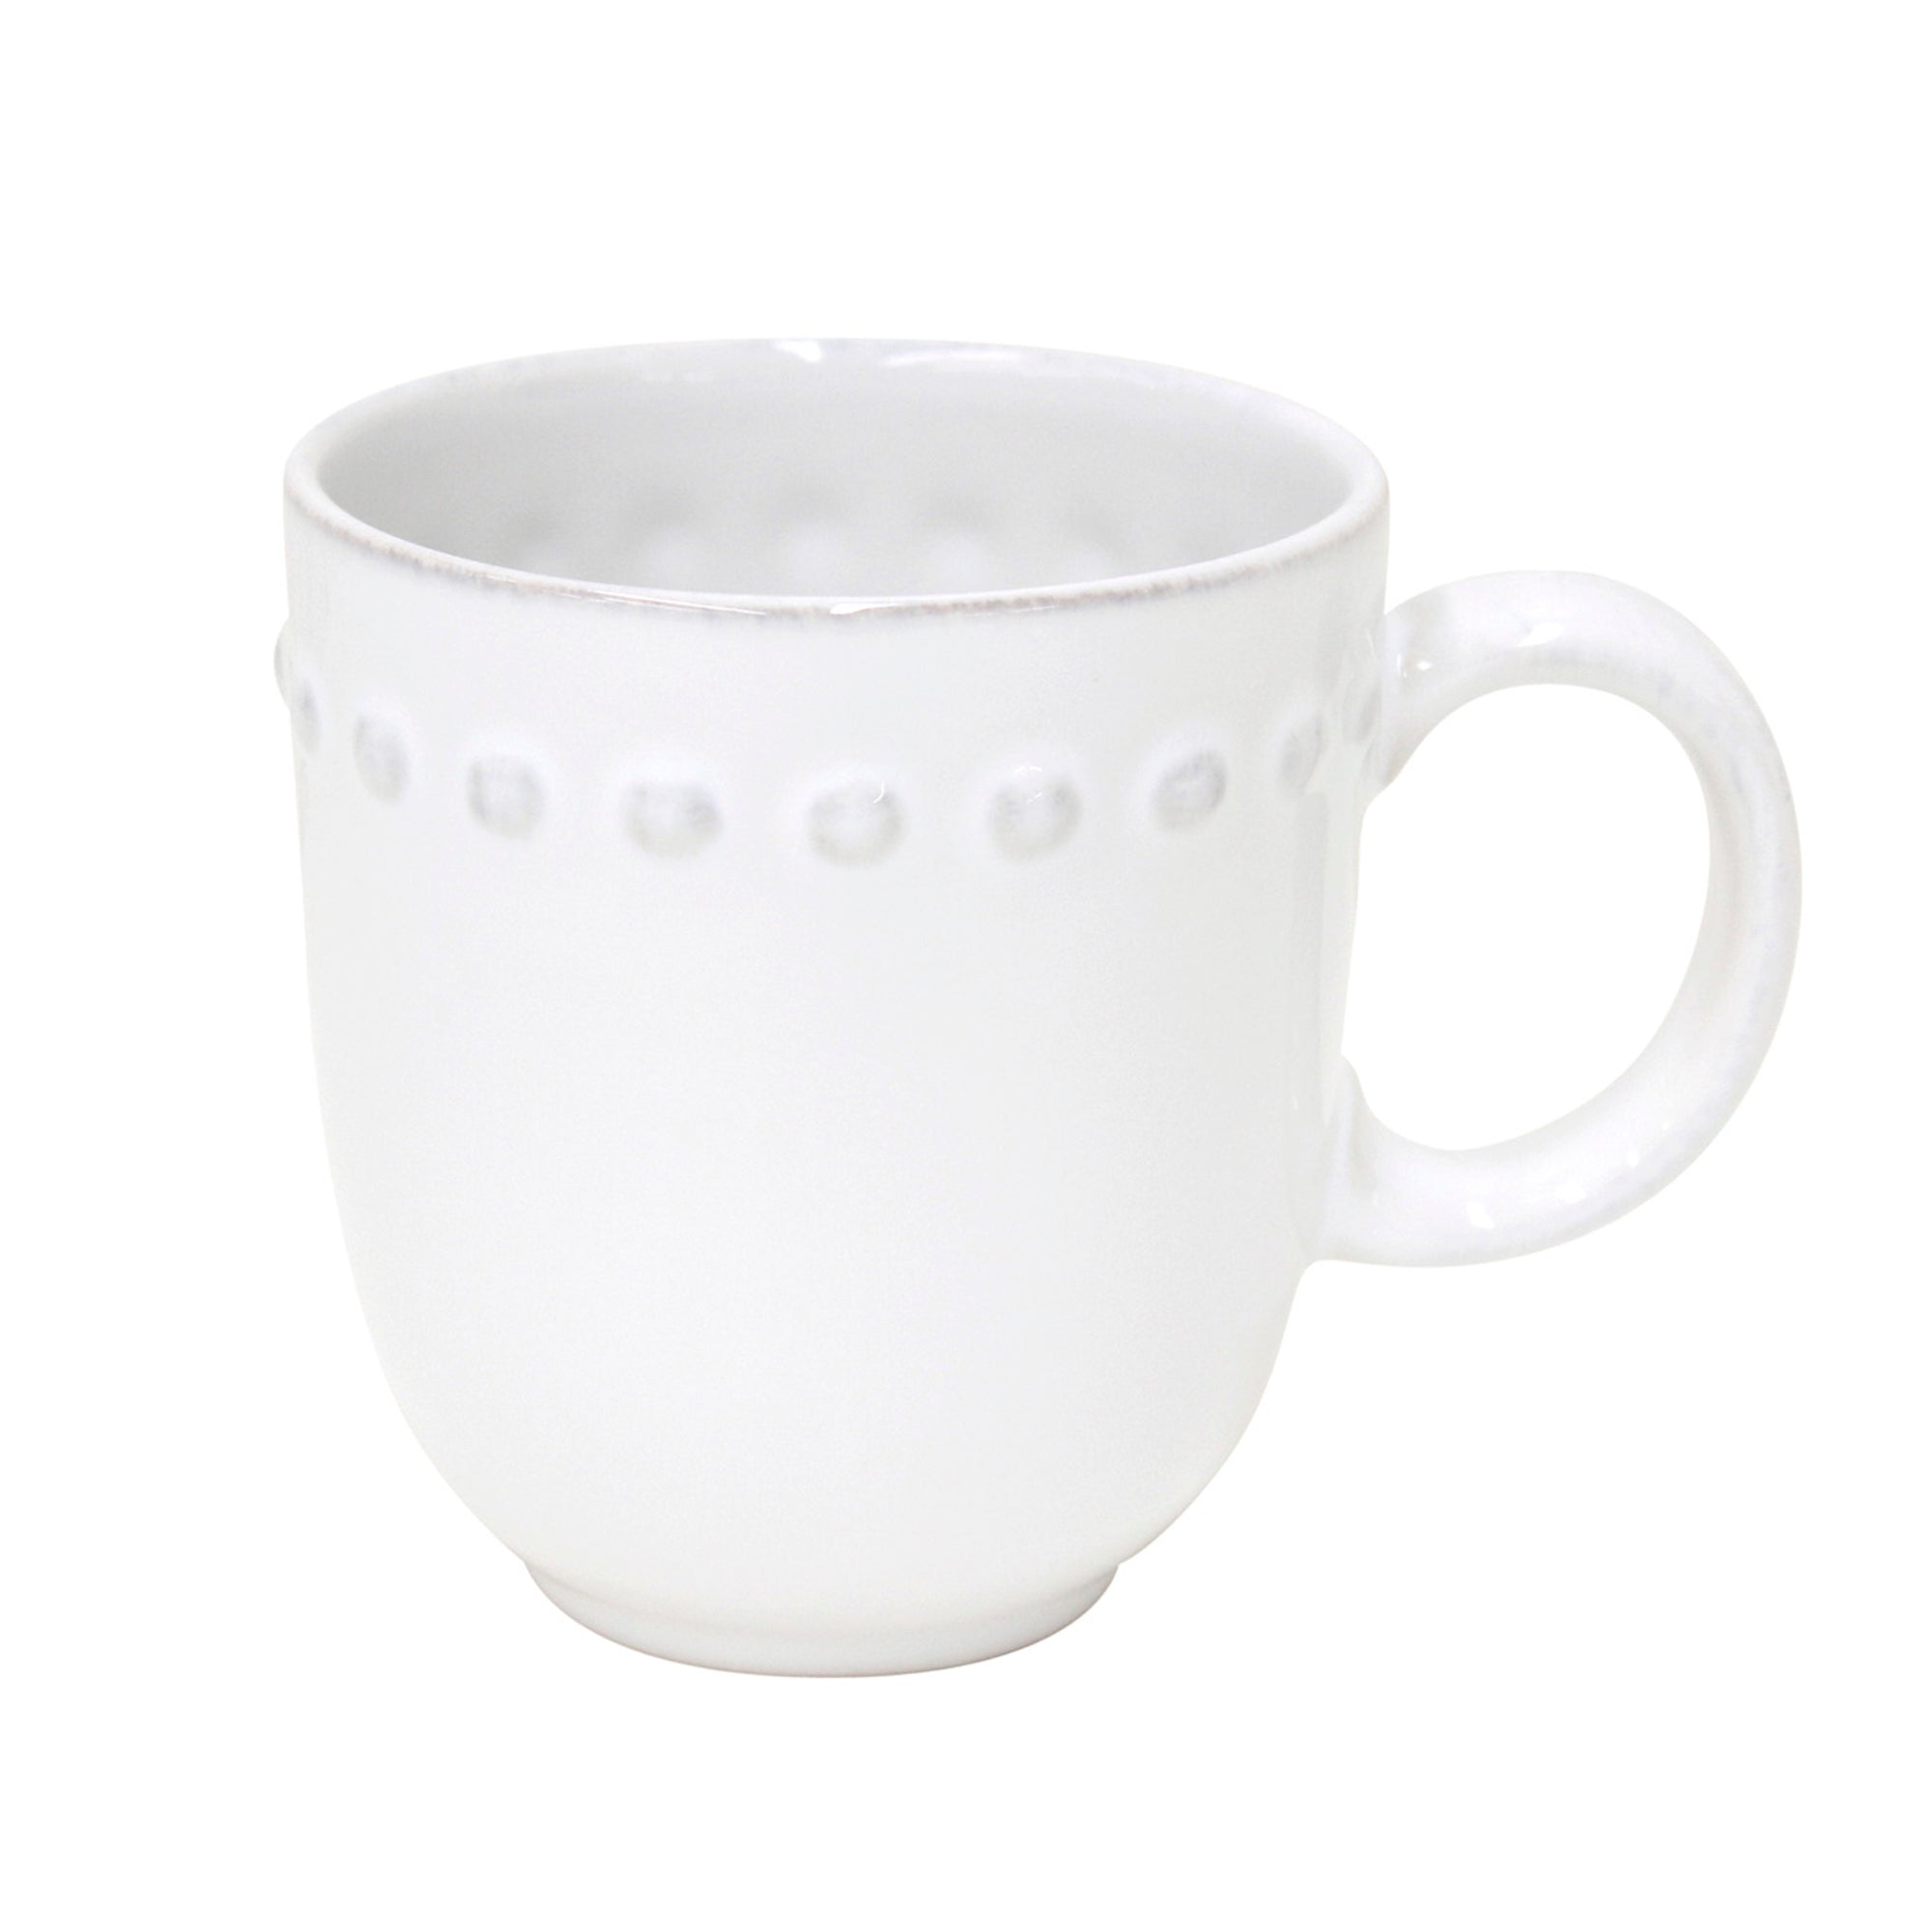 Costa Nova Costa Nova Pearl White Mug 0.37 L | 13 oz. PEC131-02202F